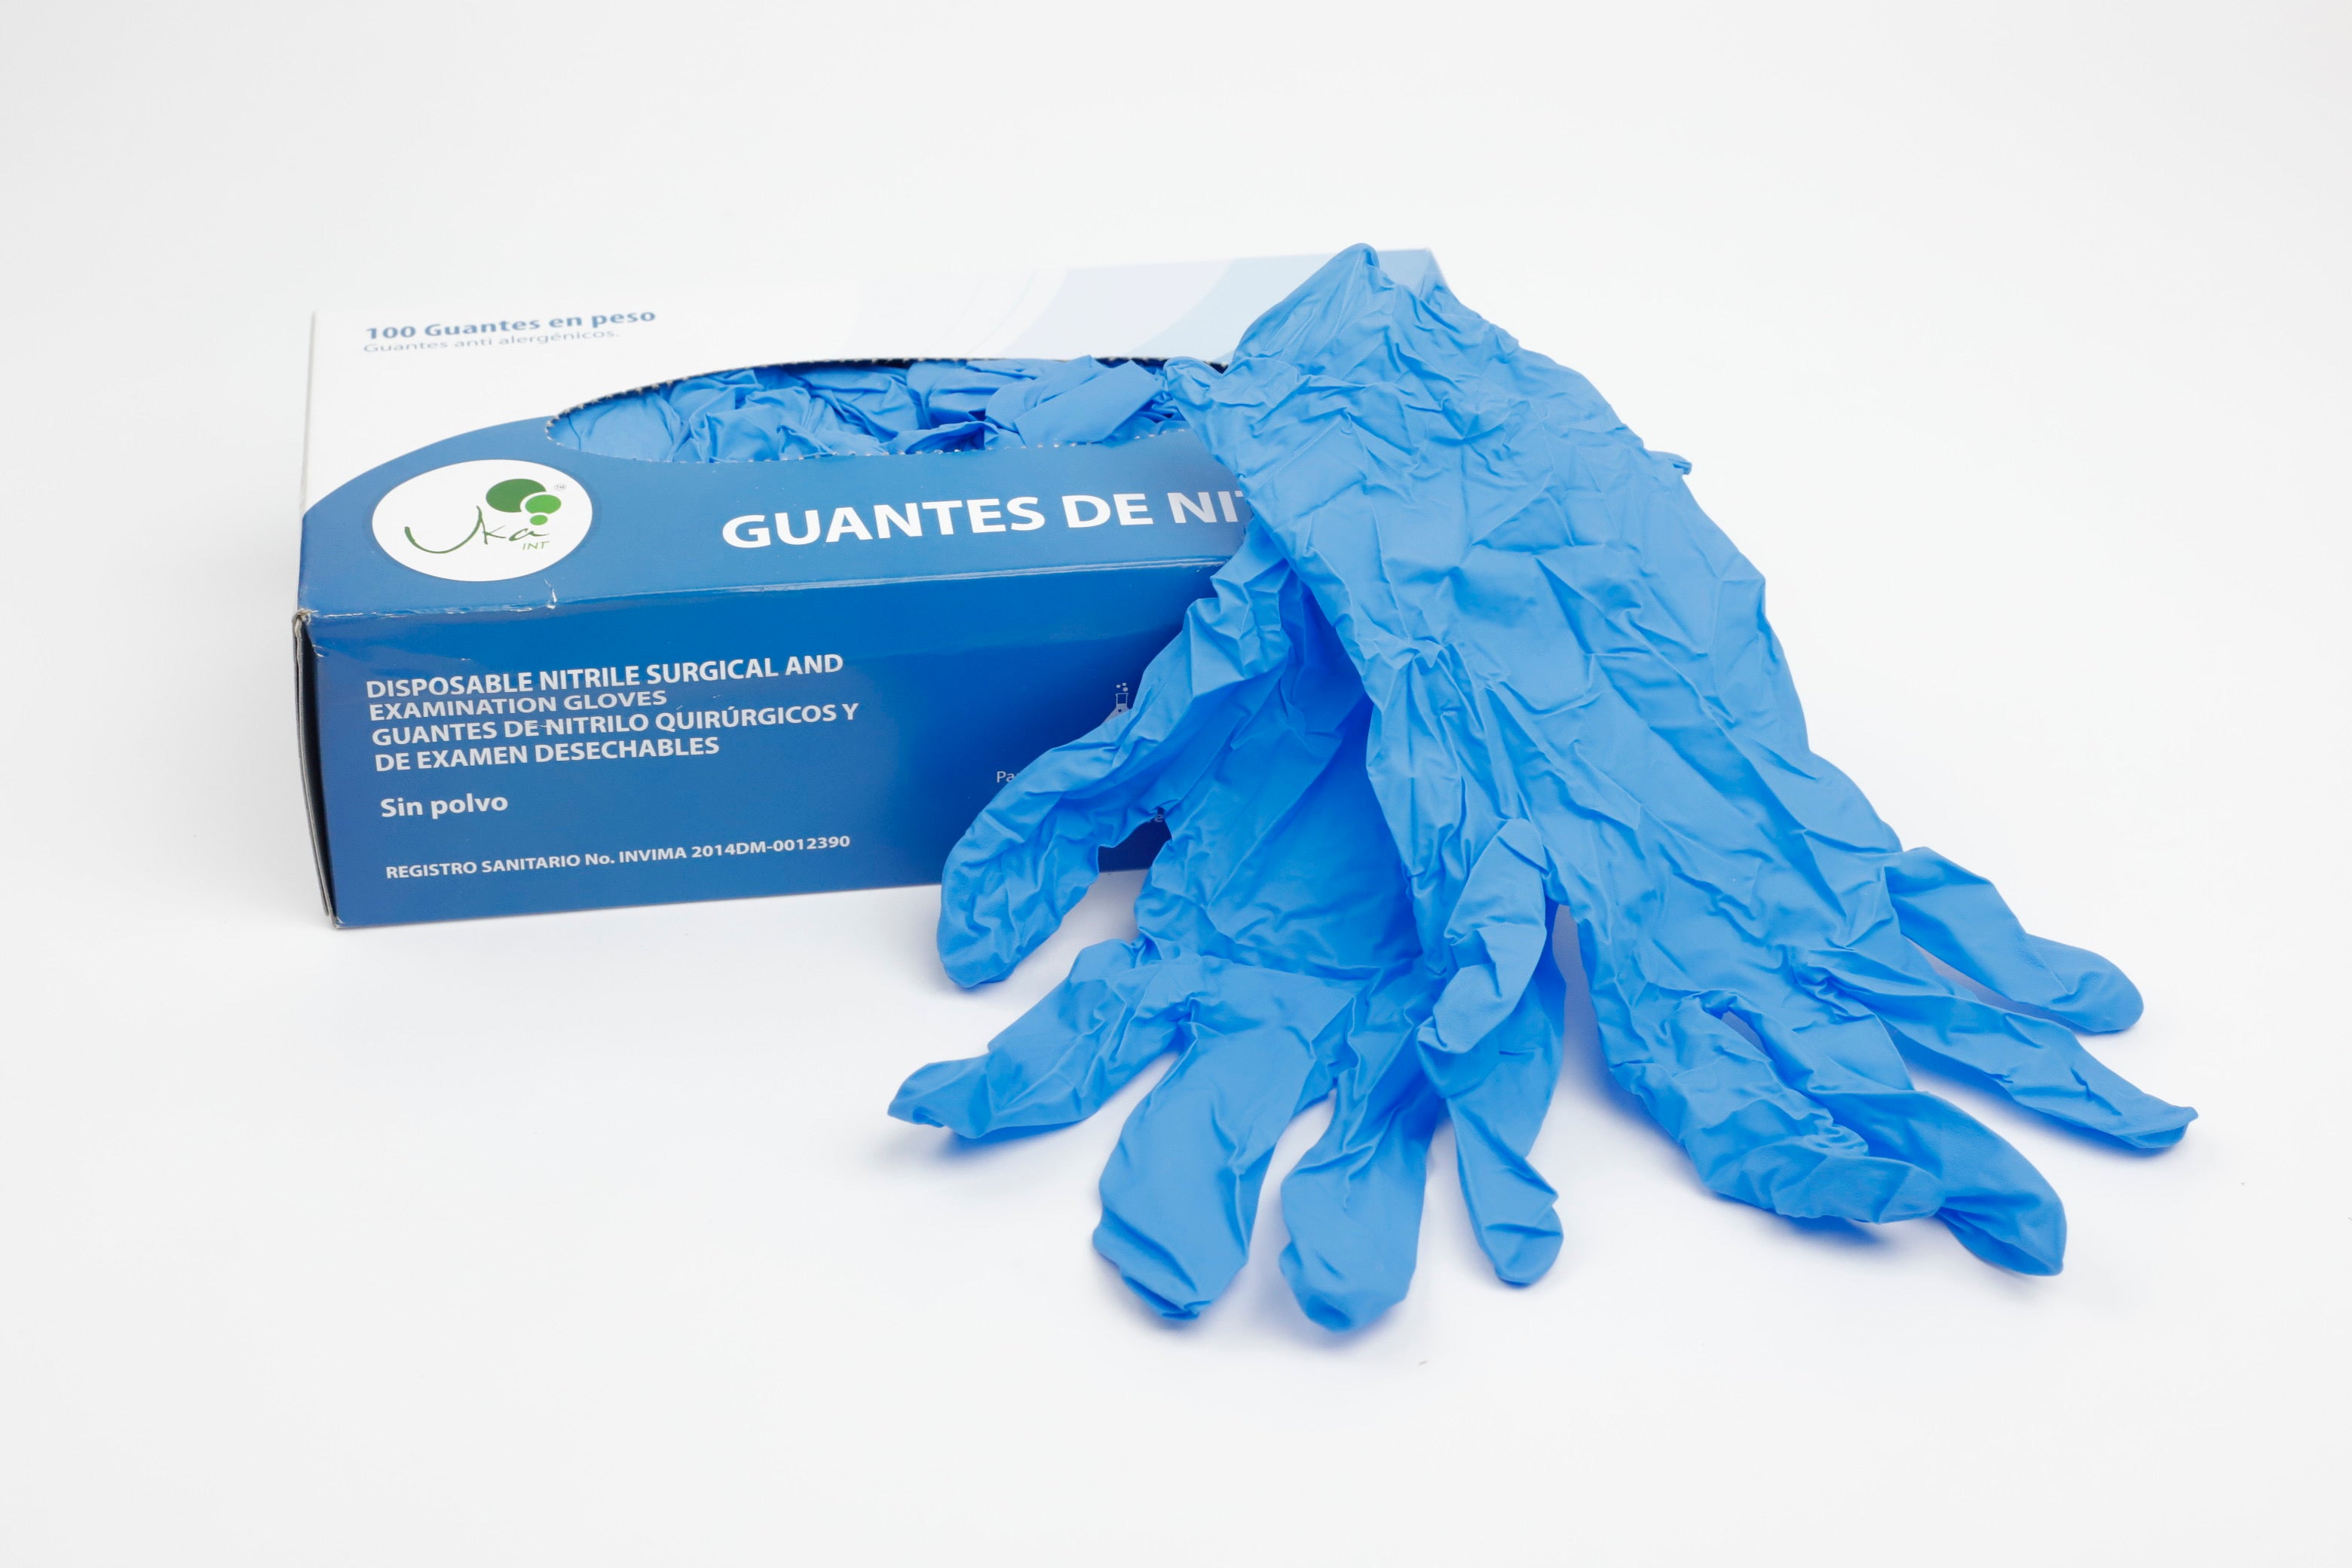 Guantes de nitrilo azul - Caja x 100 unidades - Jelt